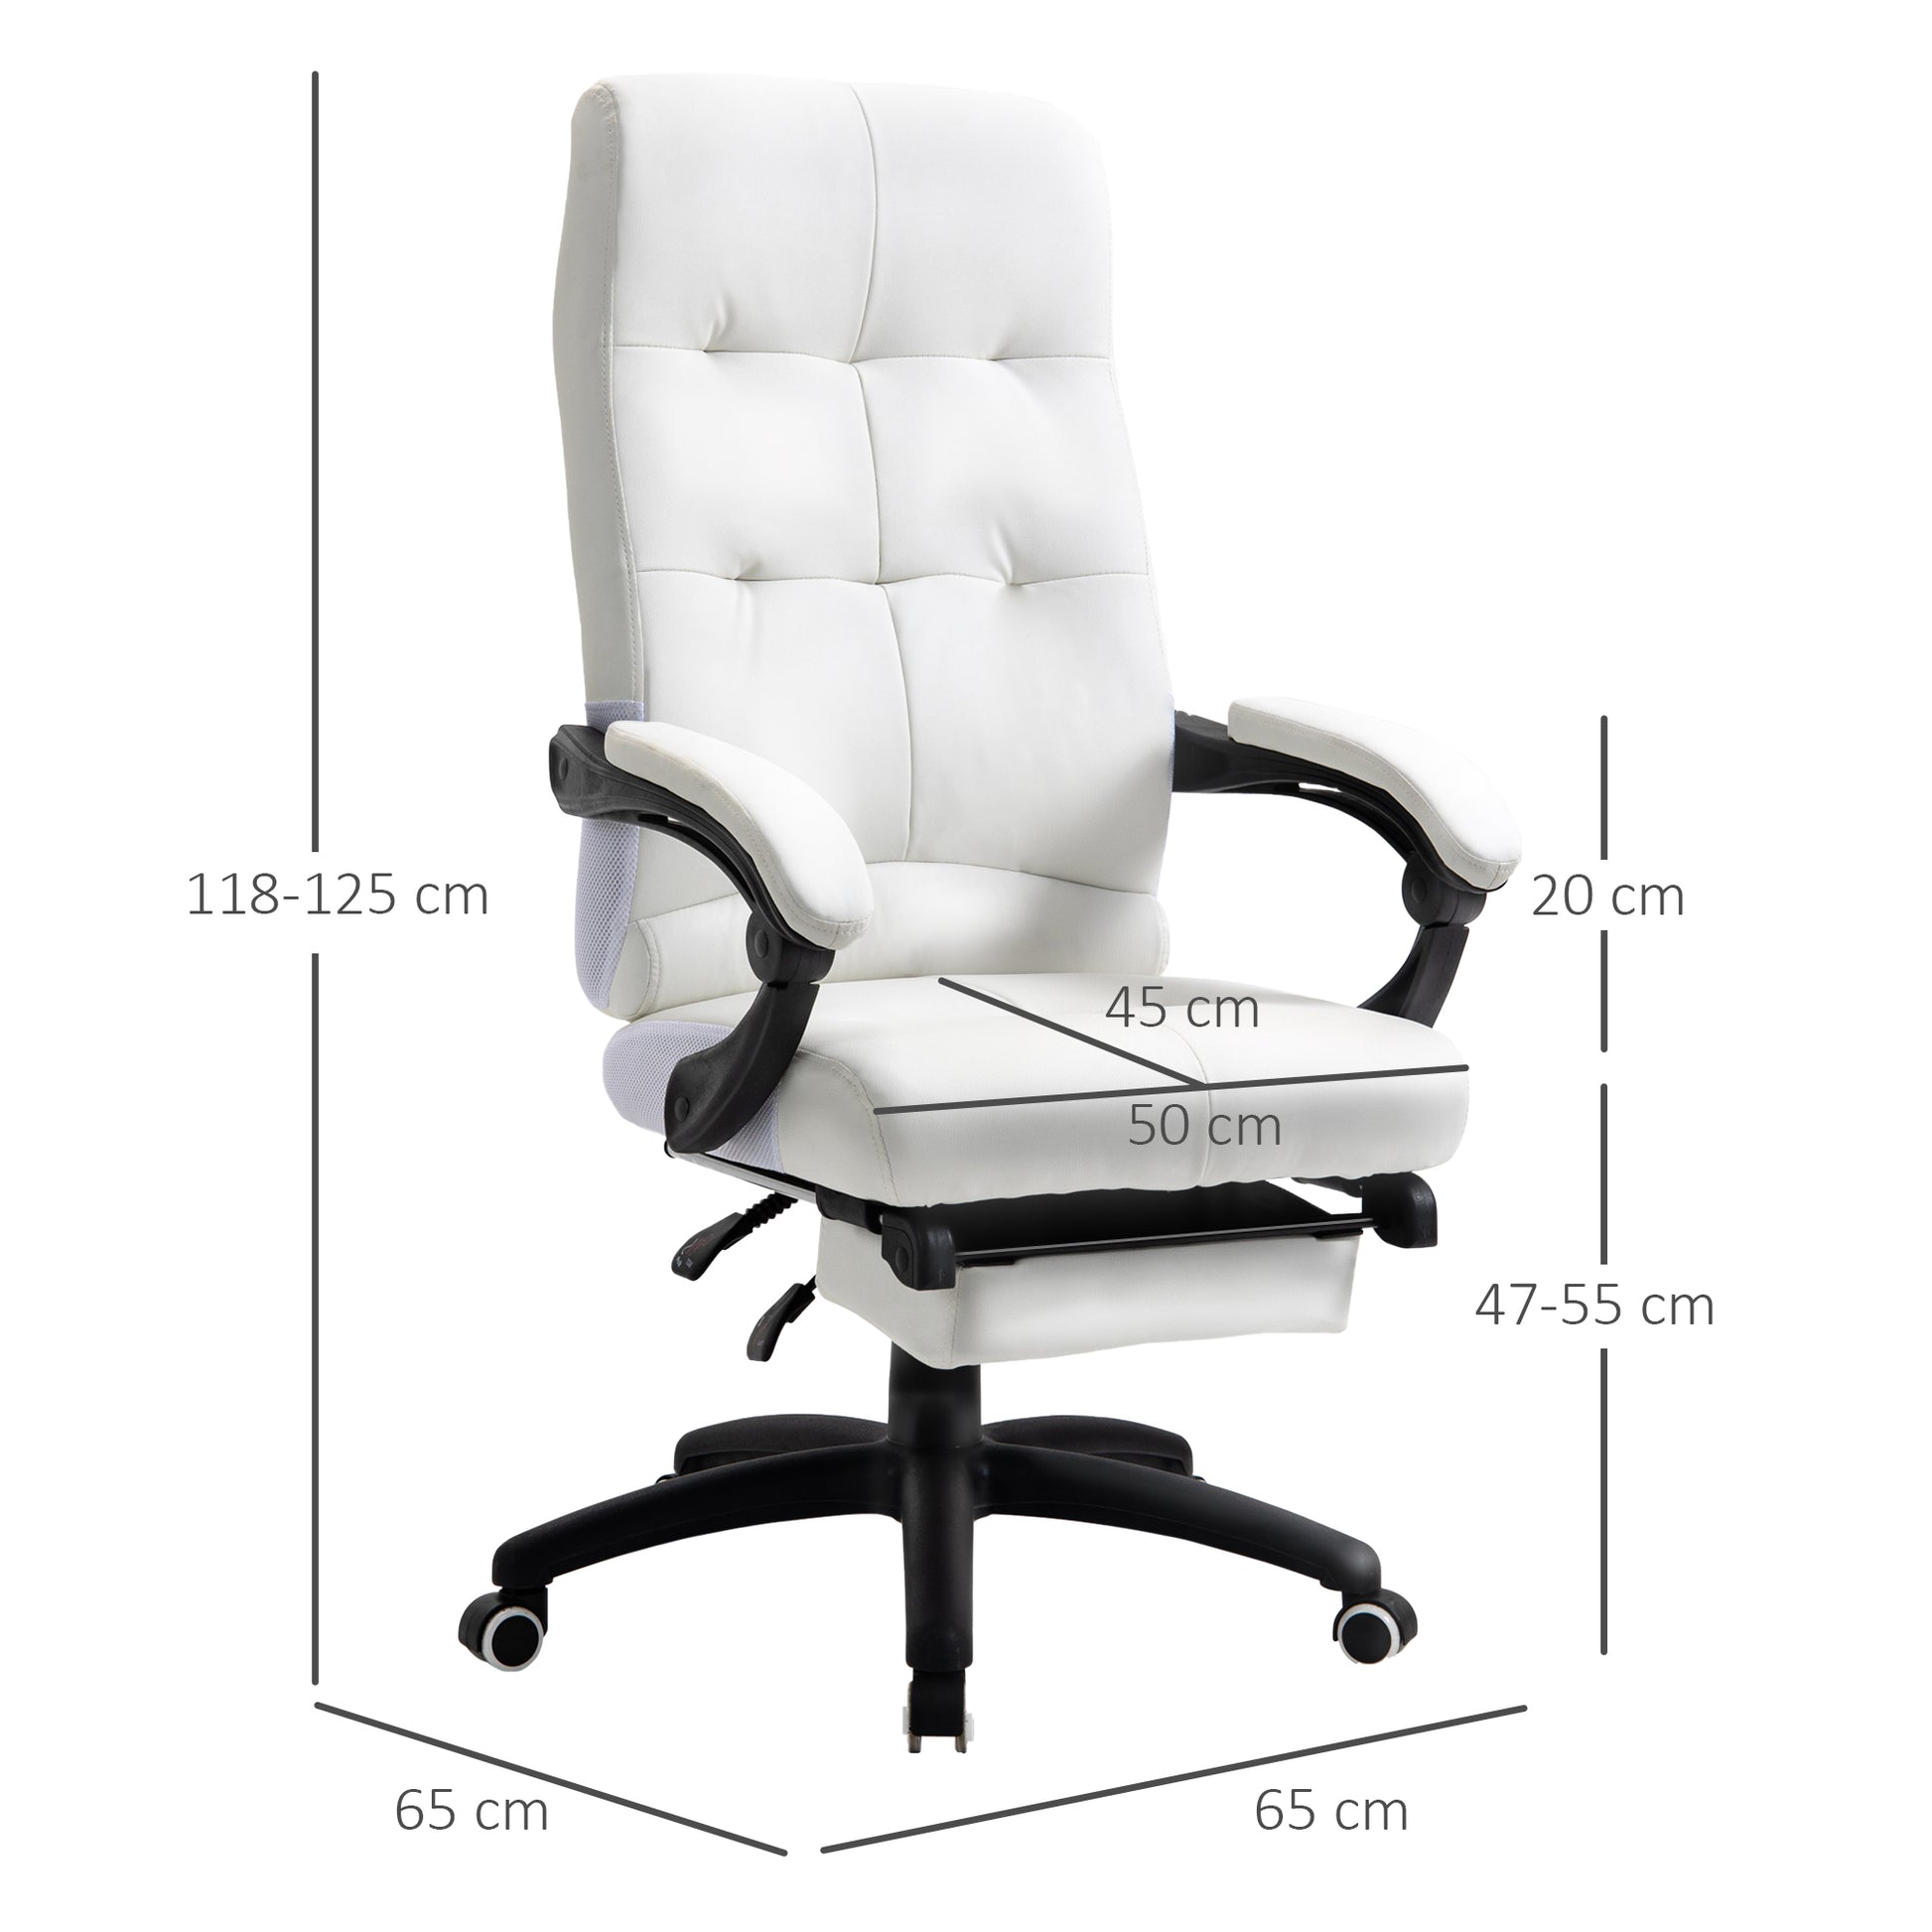 Silla de oficina, silla ergonómica de escritorio para el hogar, cómoda  silla giratoria para computadora con reposapiés y respaldo ajustable de 90°  a